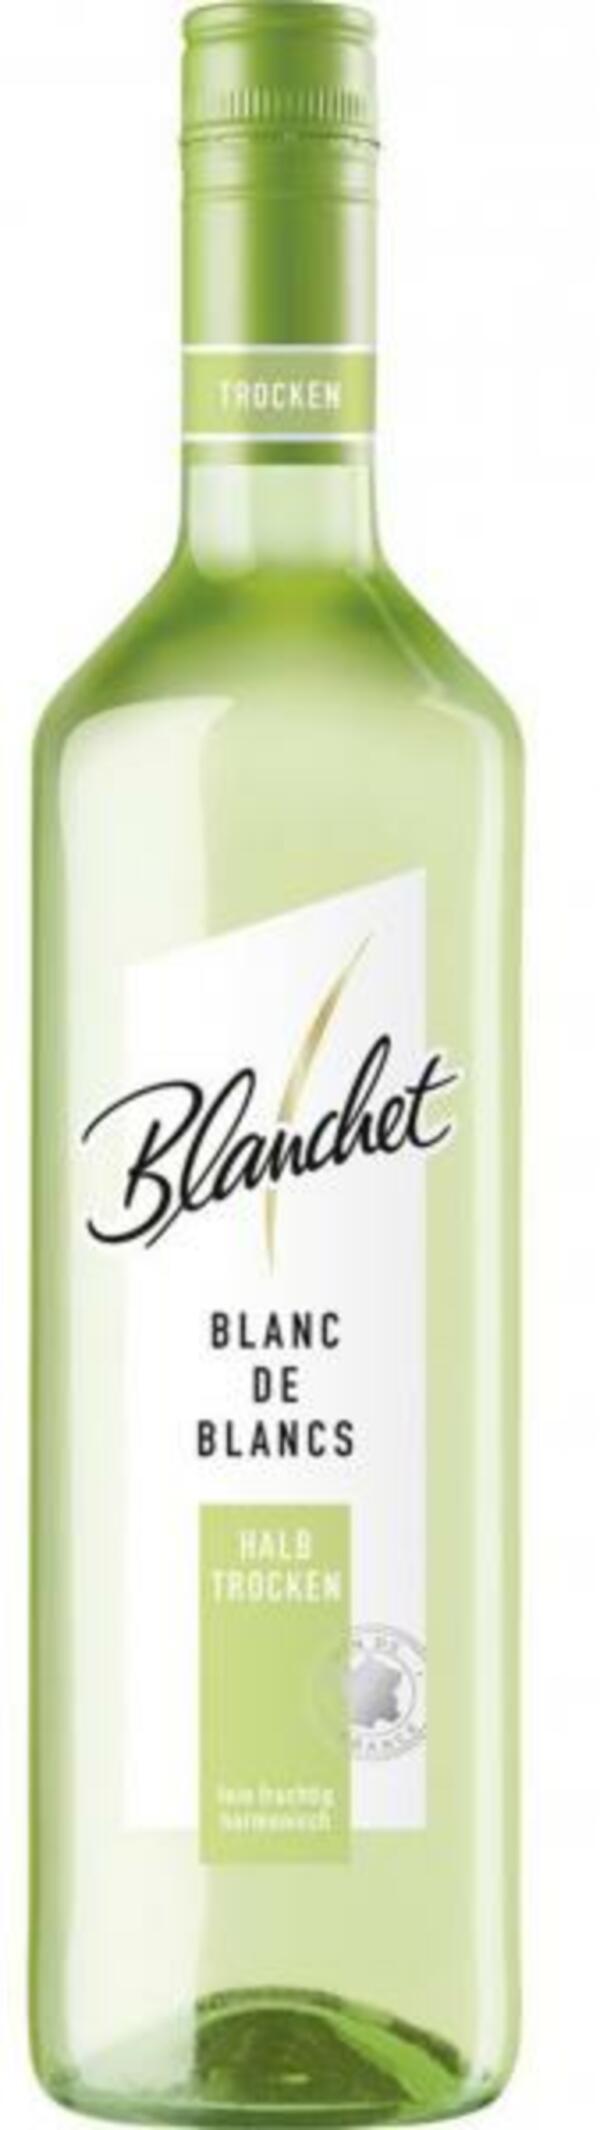 Bild 1 von Blanchet Blanc de Blancs Weißwein halbtrocken